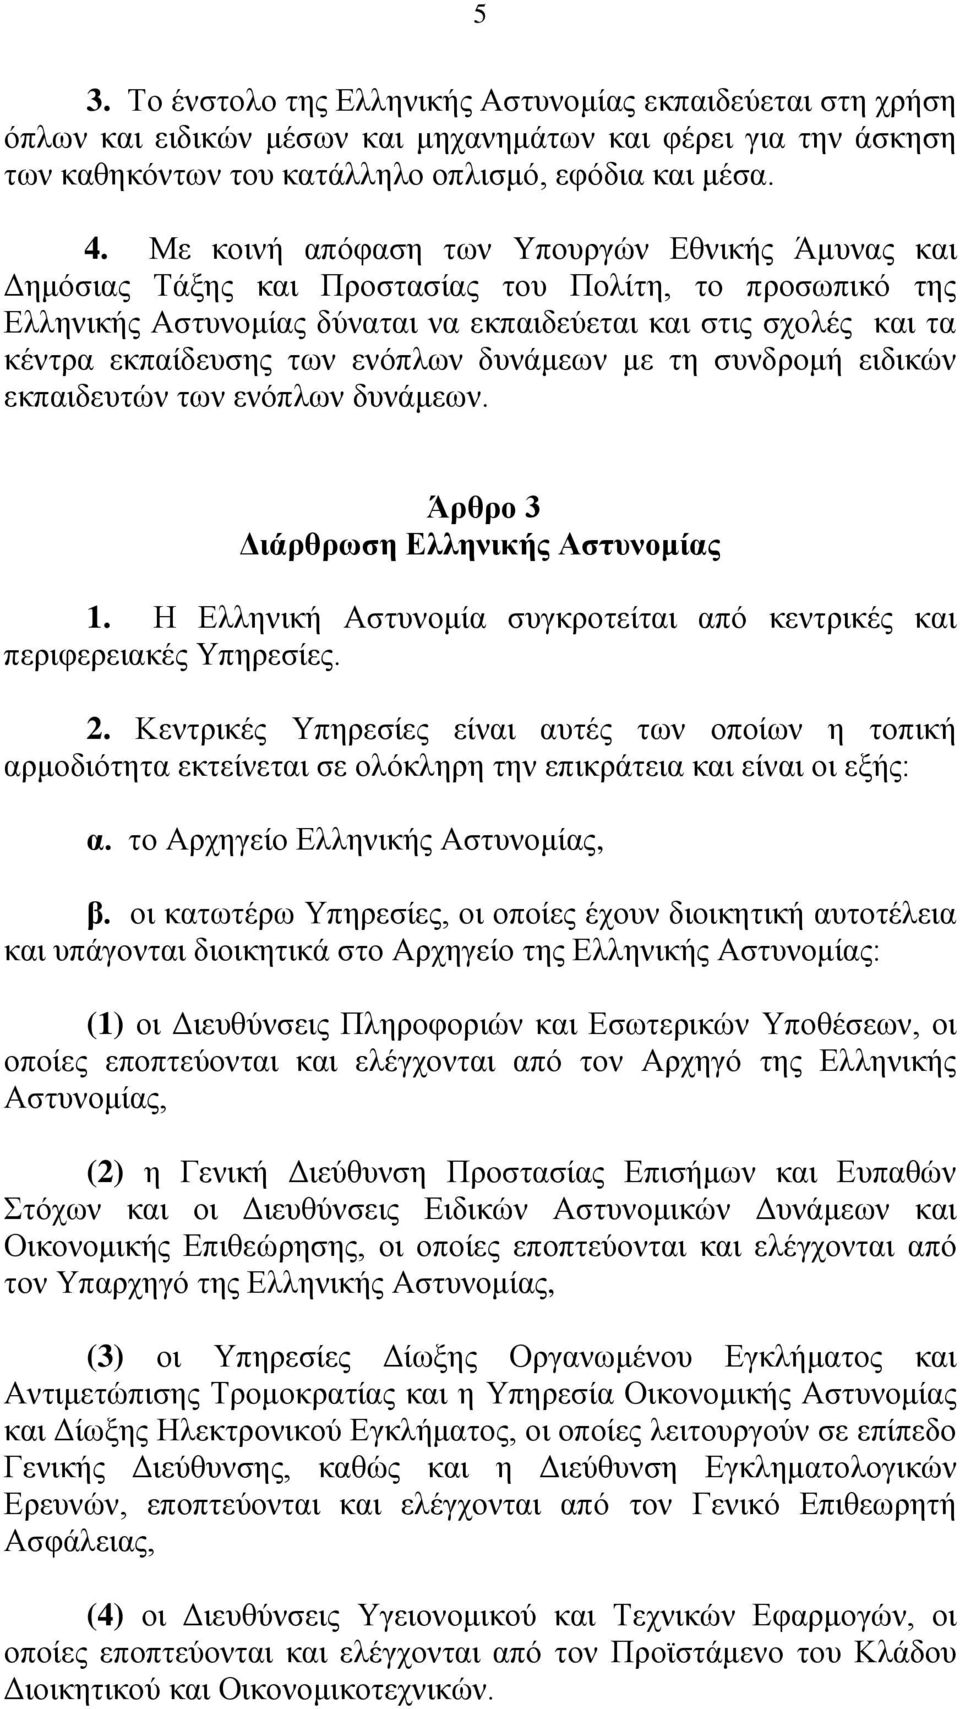 ενόπλων δυνάμεων με τη συνδρομή ειδικών εκπαιδευτών των ενόπλων δυνάμεων. Άρθρο 3 Διάρθρωση Ελληνικής Αστυνομίας 1. Η Ελληνική Αστυνομία συγκροτείται από κεντρικές και περιφερειακές Υπηρεσίες. 2.